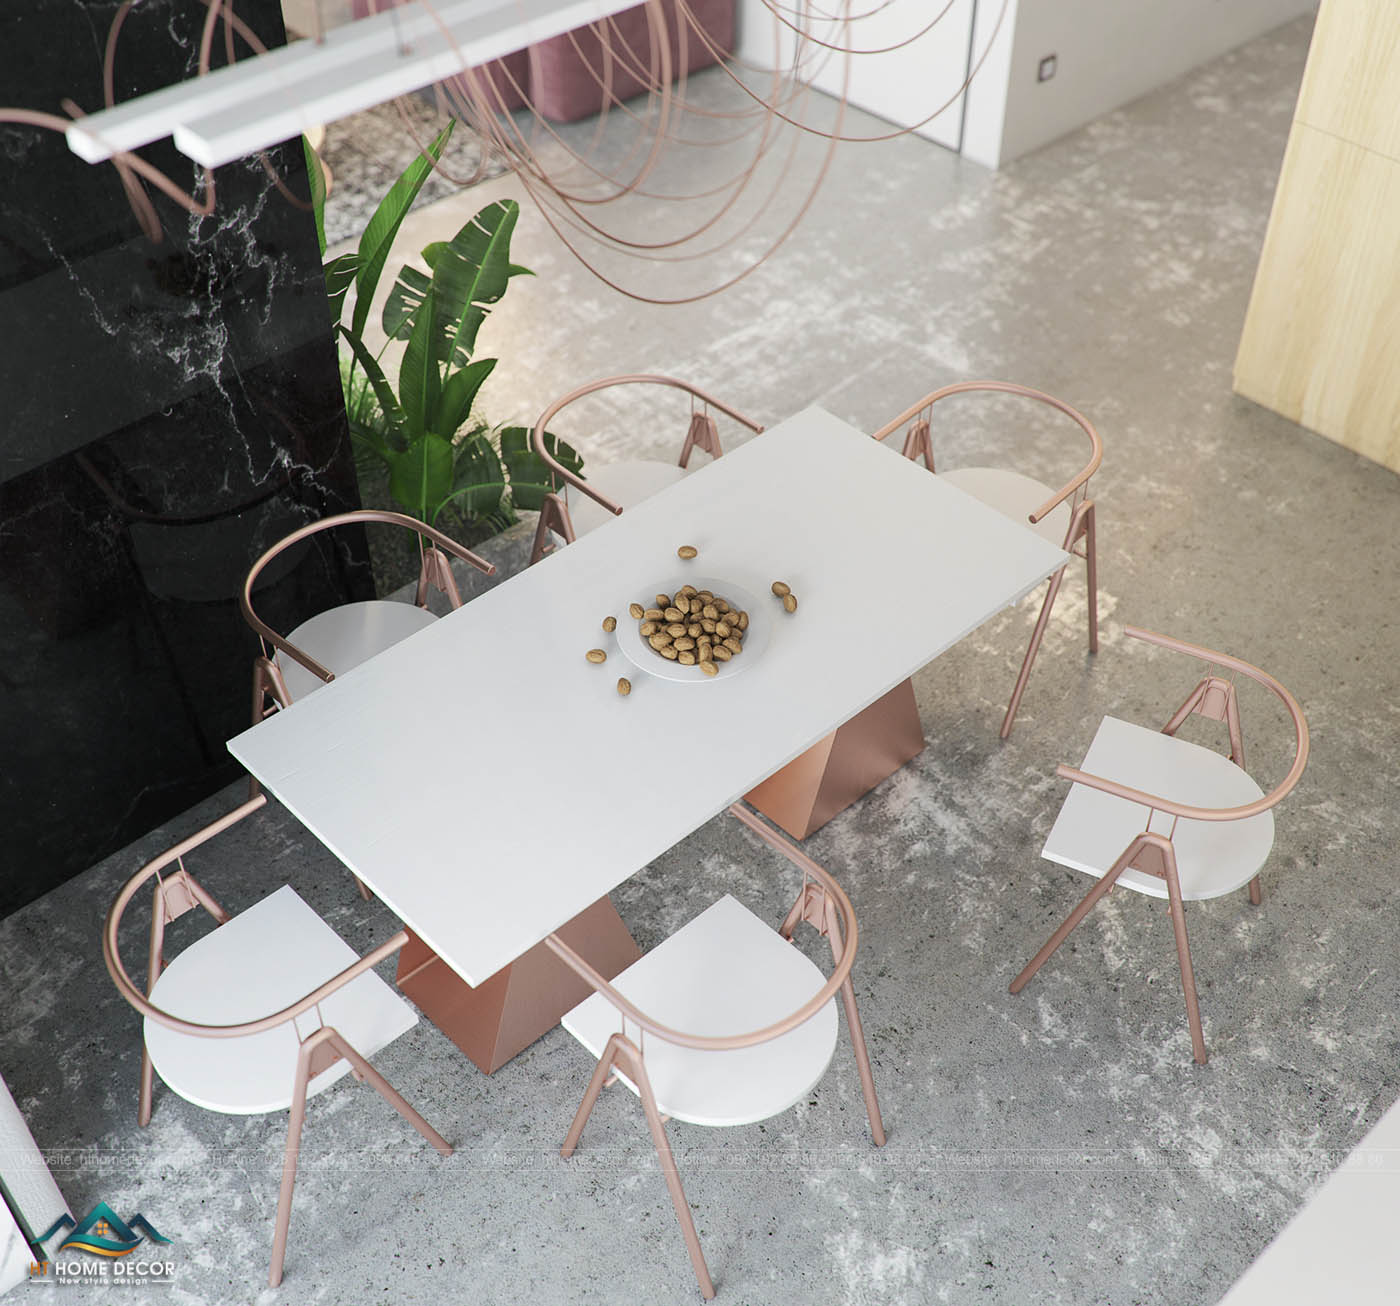 Bộ bàn ghế kiểu cách đơn giản với gam màu trắng- vàng đồng tạo nên không gian bếp cổ điển nhưng có chút gì đó hiện đại bắt mắt.